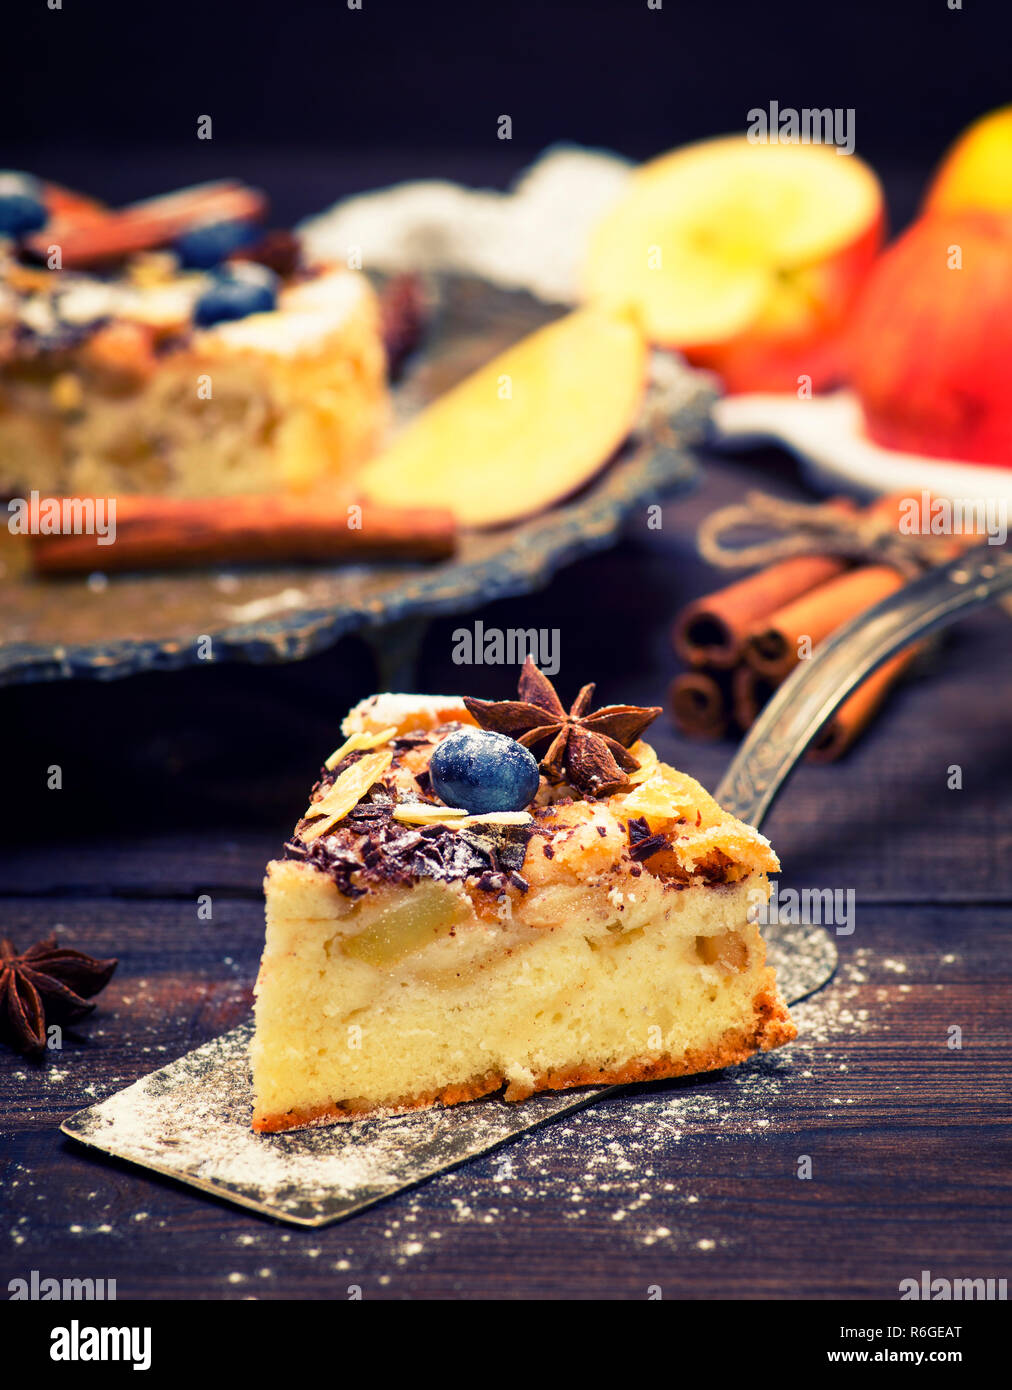 slice of apple pie on an iron kitchen spatula Stock Photo